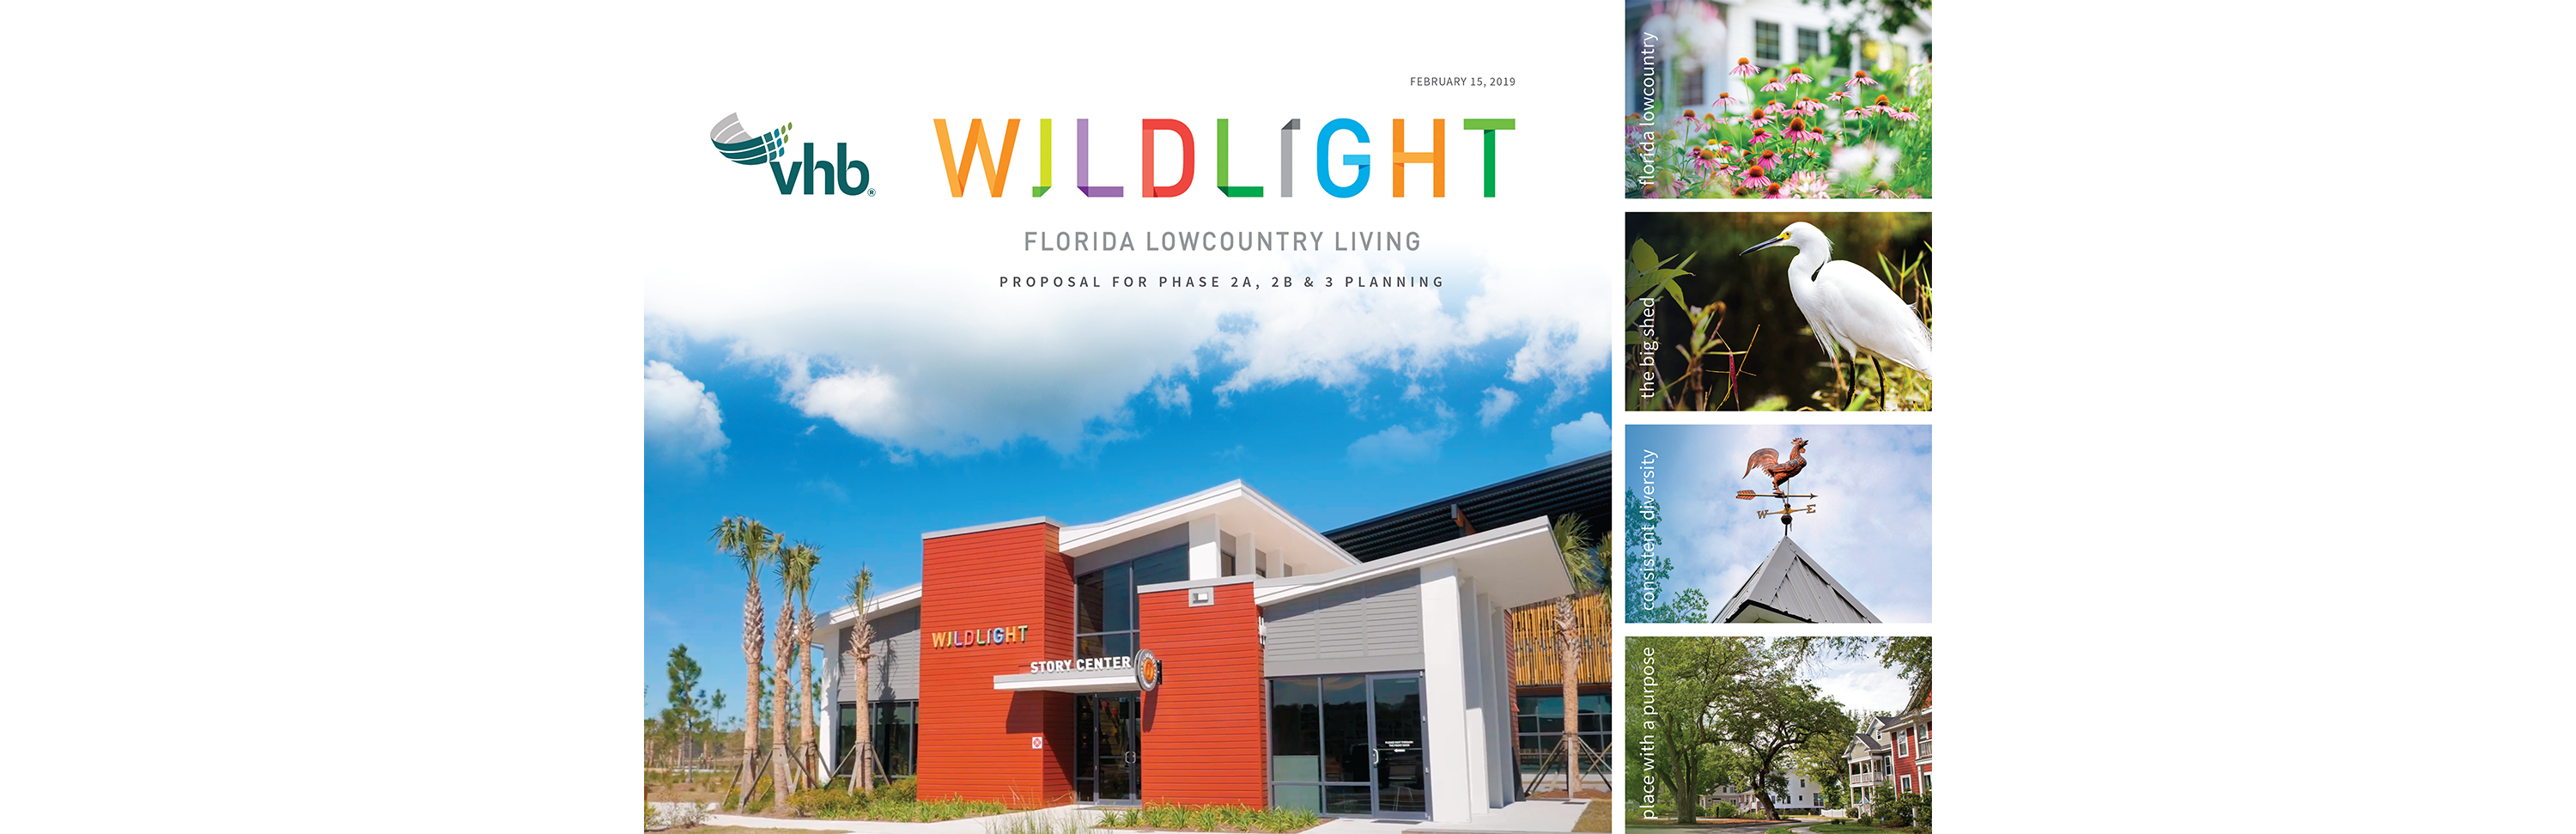 Linda Hanus - Wildlight Booklet Design Cover